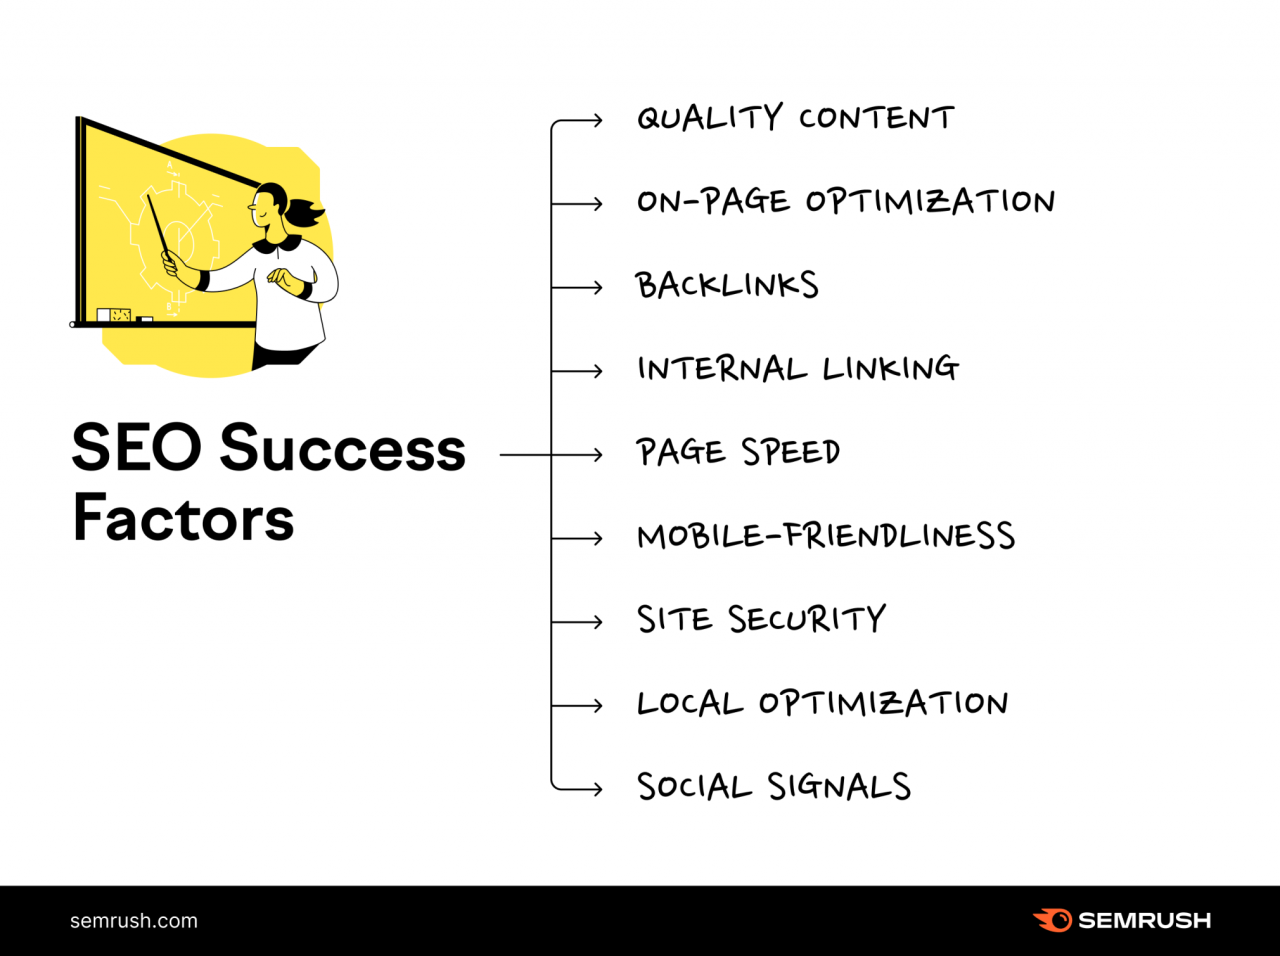 SEO success factors